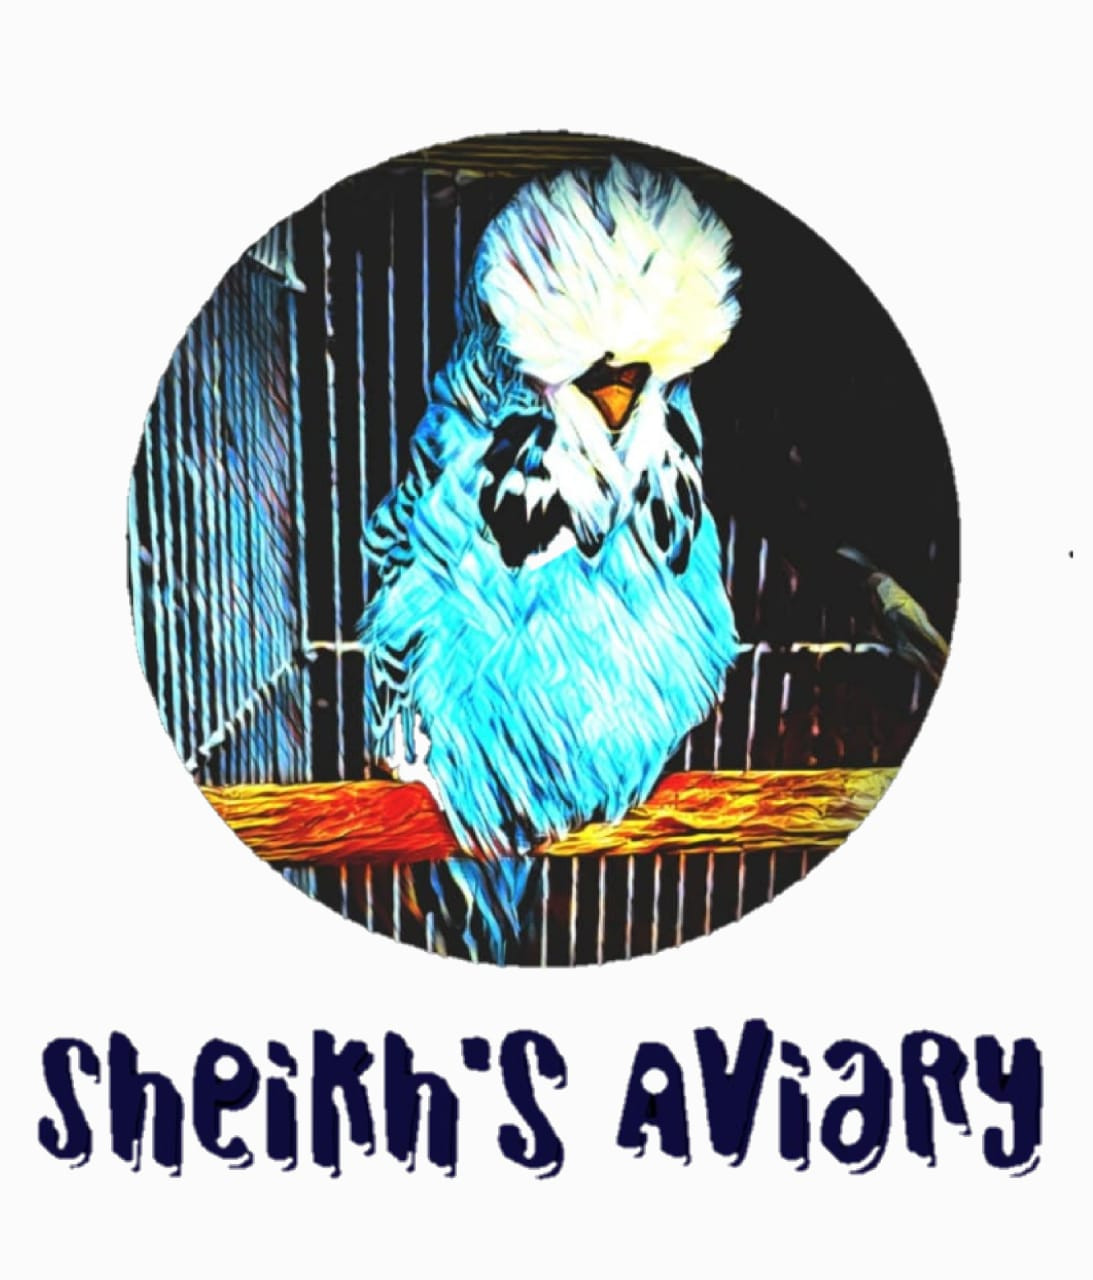 Sheikh's Aviary